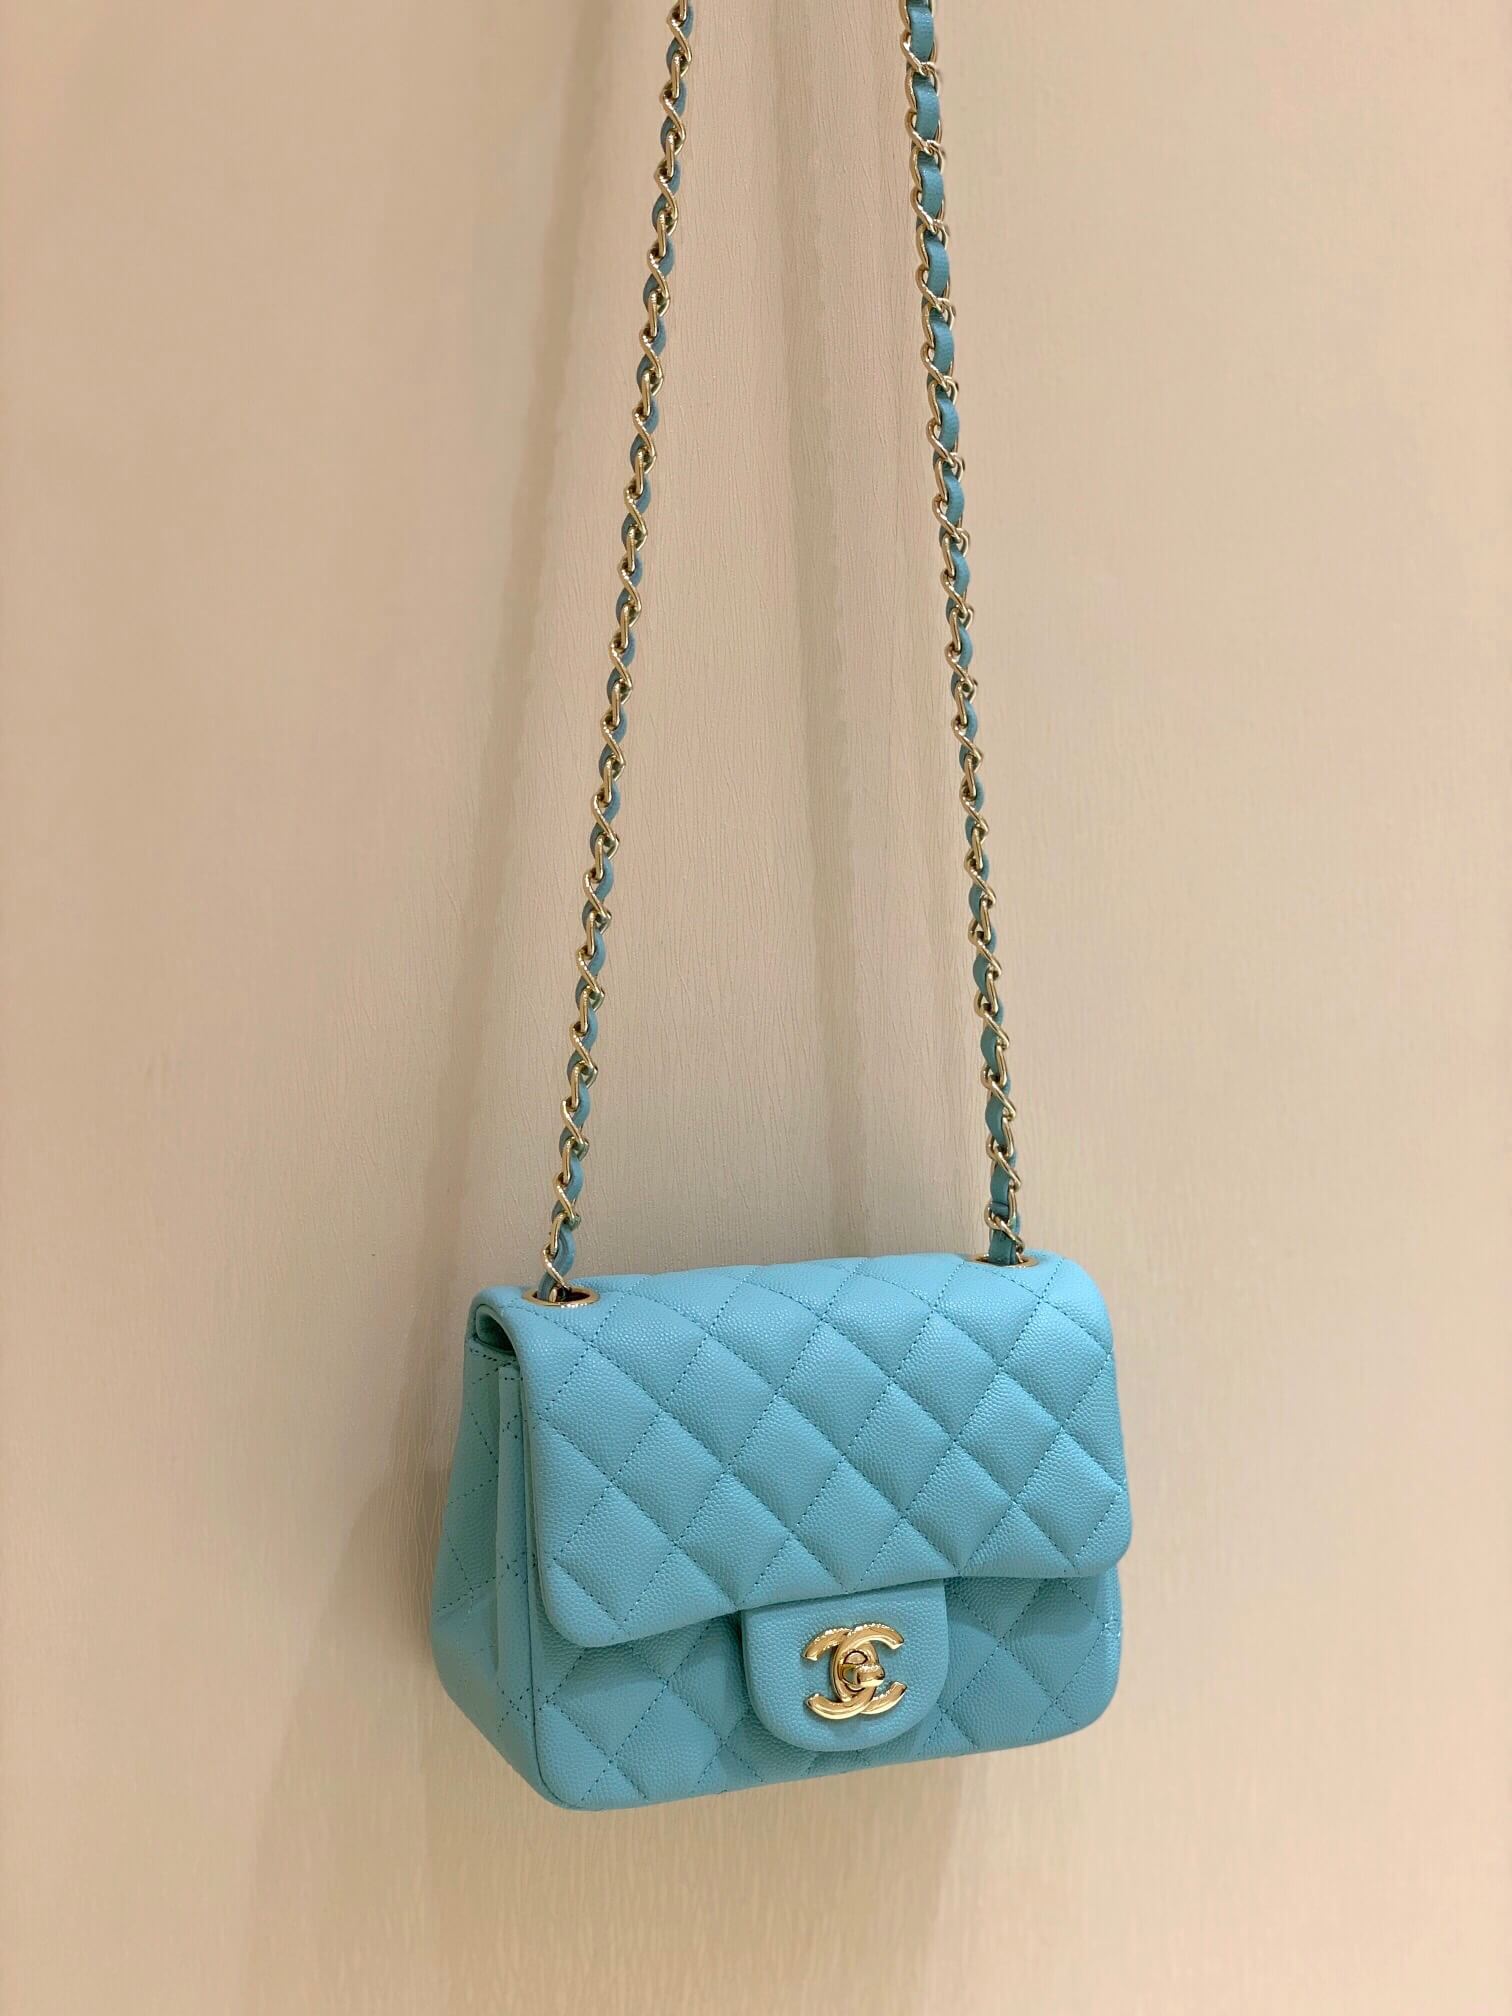 Chanel原厂CF17方胖子Classic flap bag A01115tiffany蓝